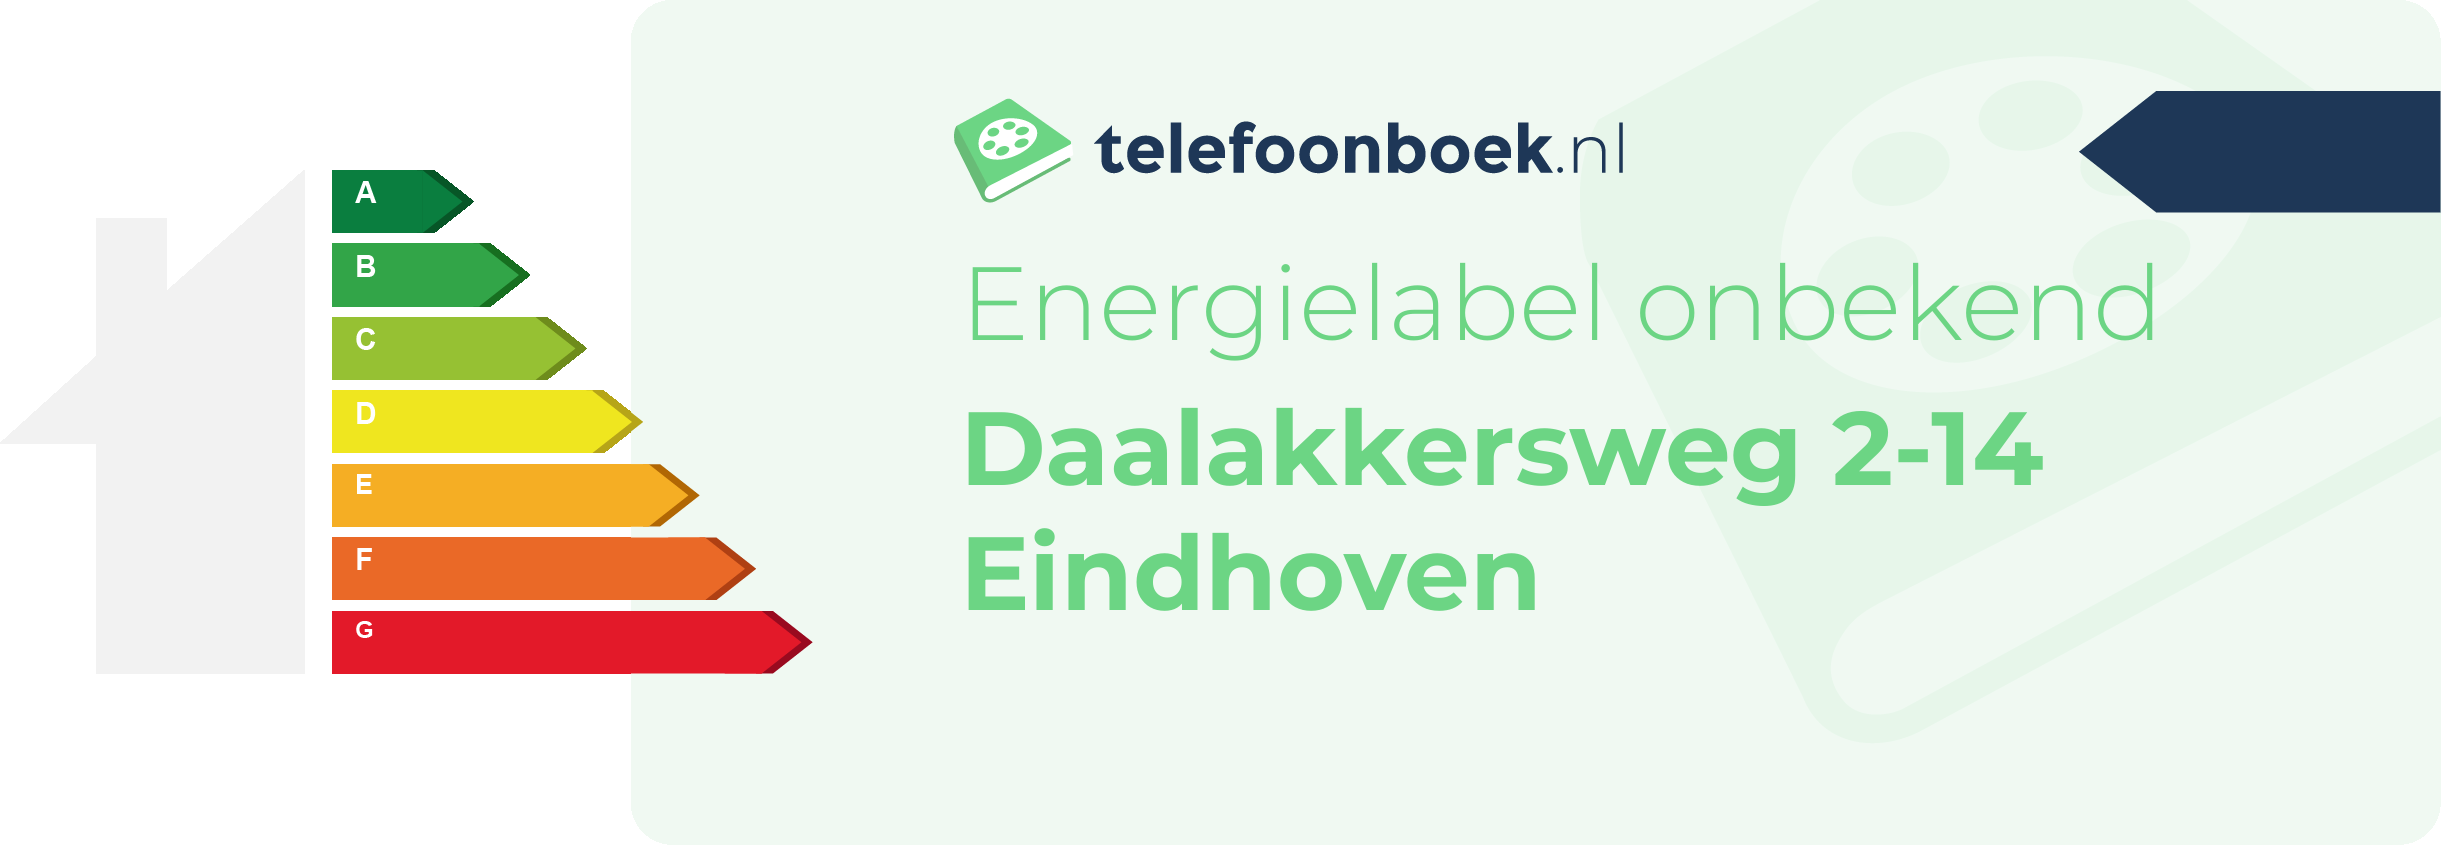 Energielabel Daalakkersweg 2-14 Eindhoven